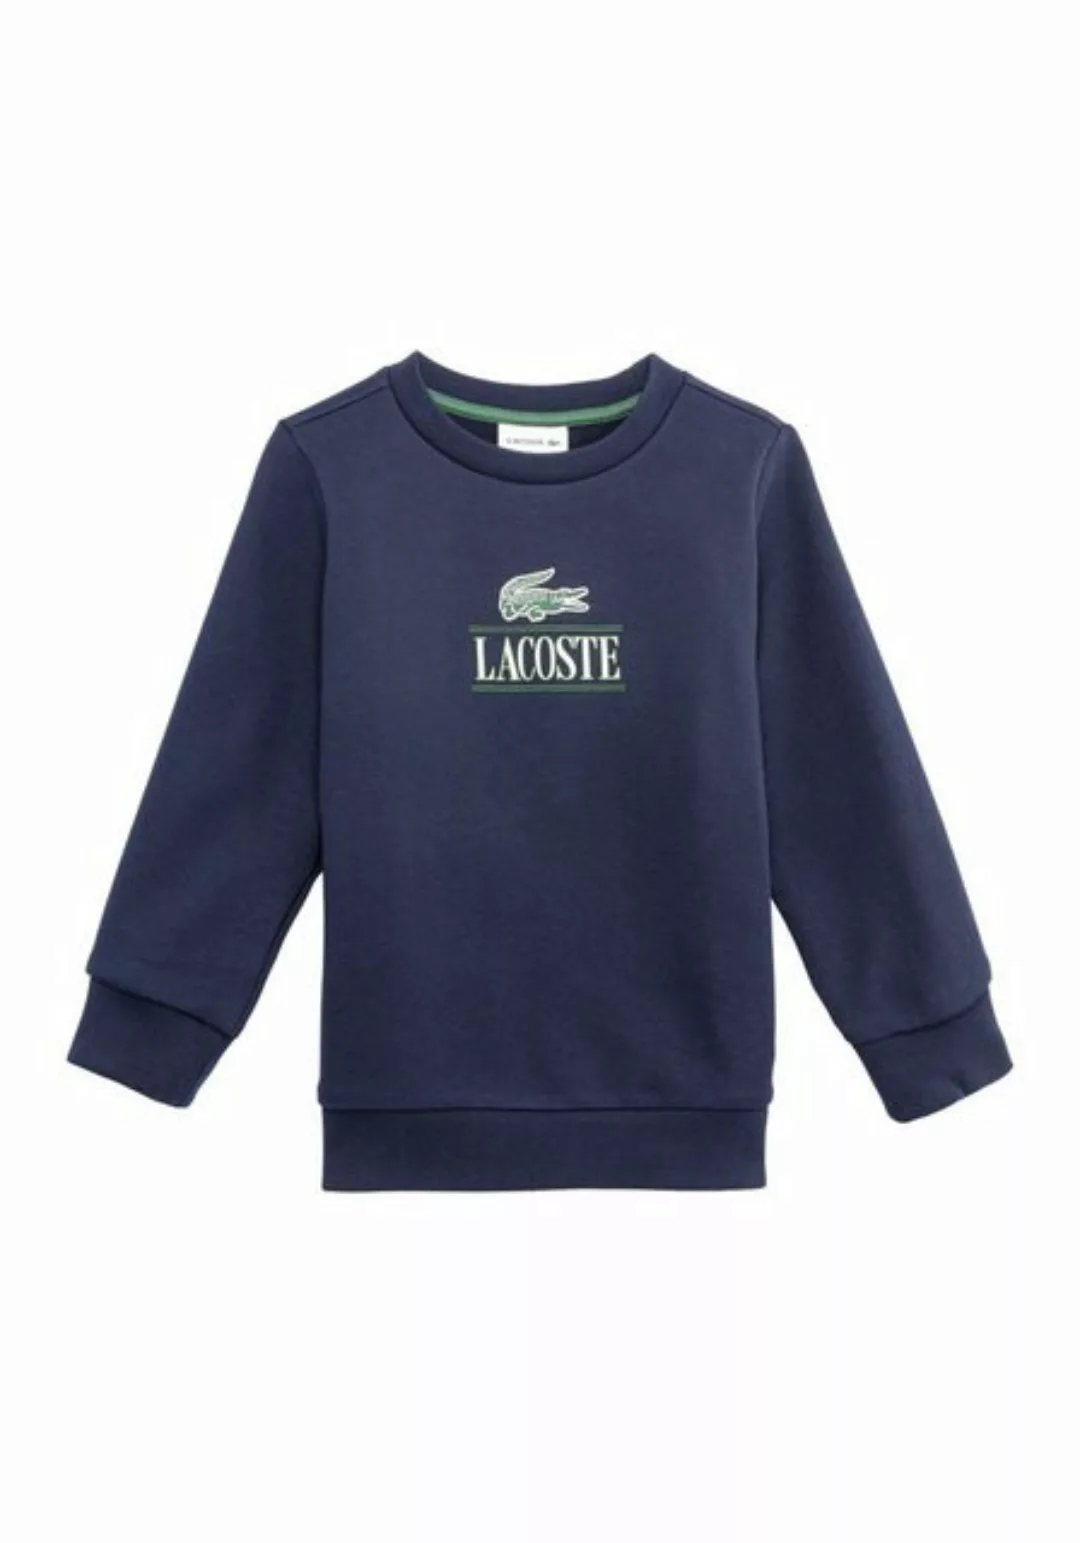 Lacoste Sweater mit Lacoste Aufdruck günstig online kaufen